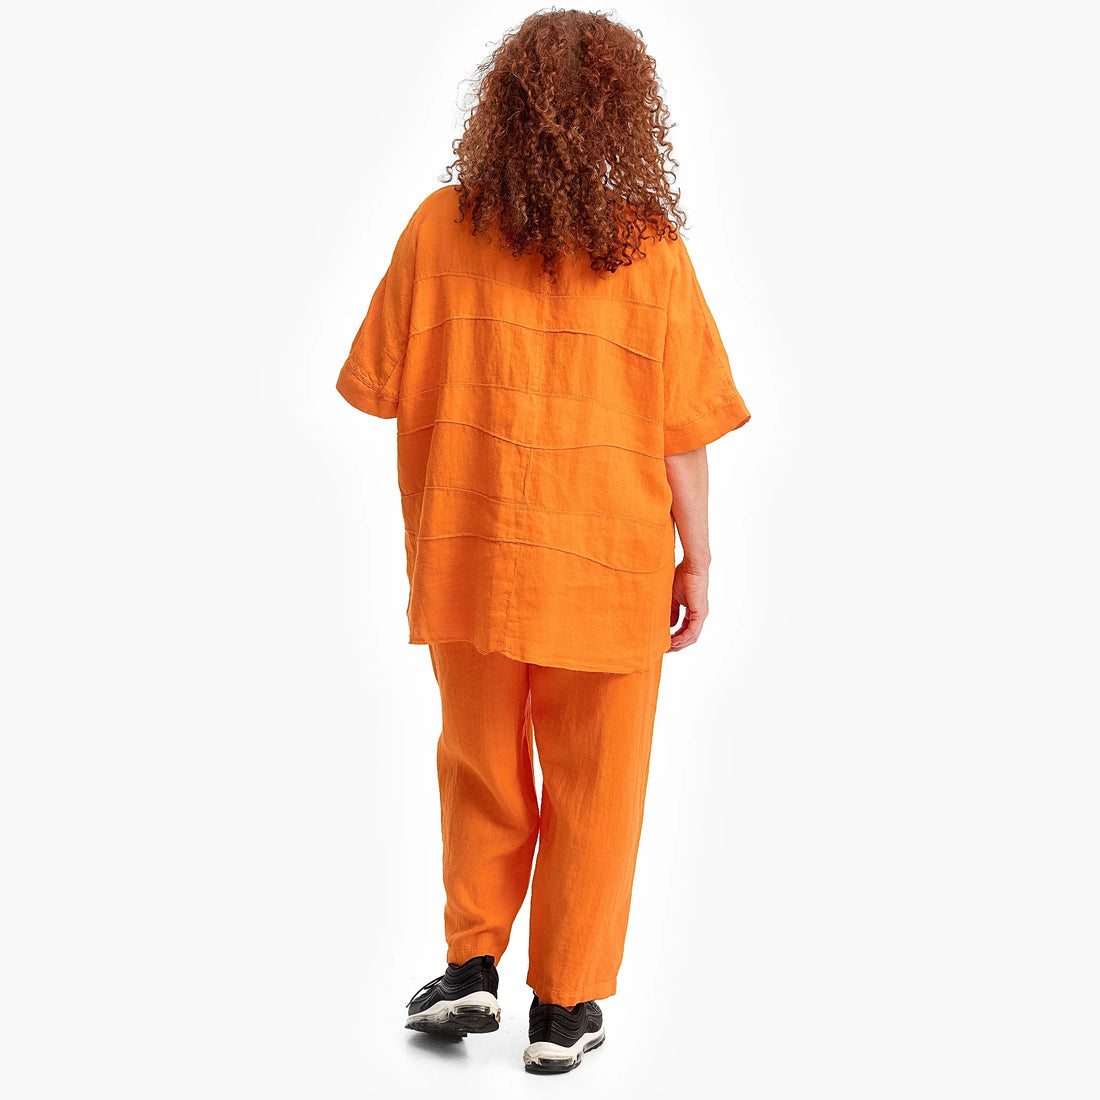 Shirt von Do Your Best aus Leinen in kastiger Form, FS246.D659, Orange, Schick, Modern